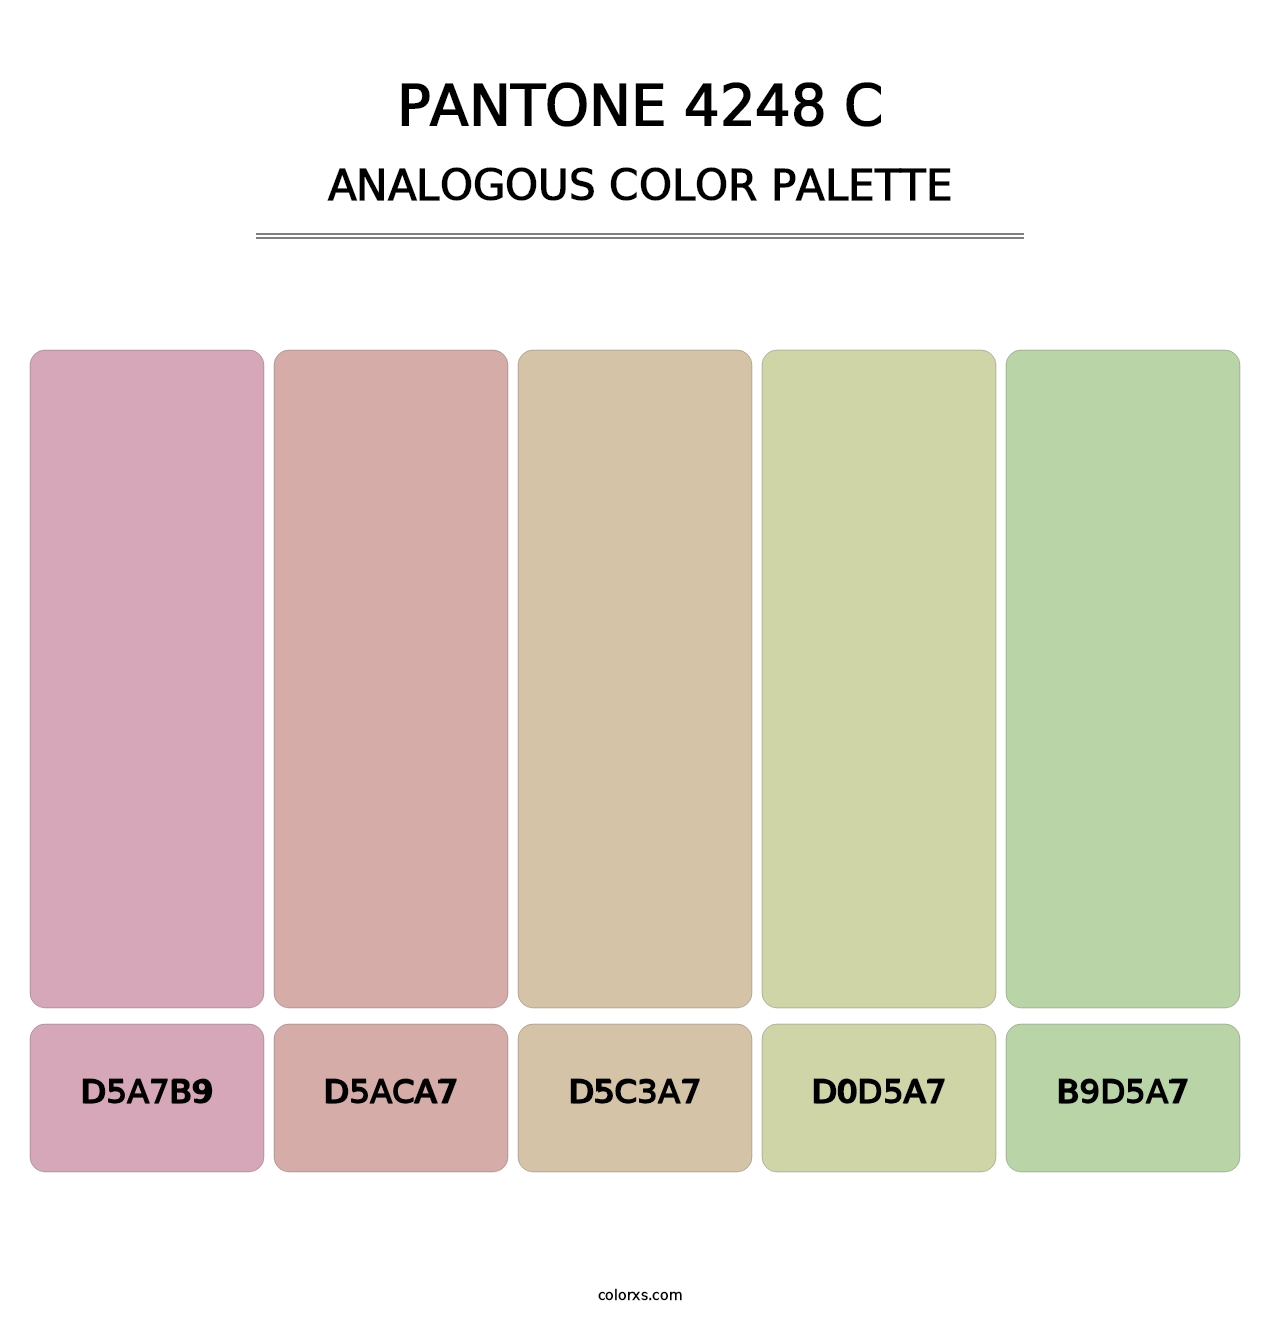 PANTONE 4248 C - Analogous Color Palette